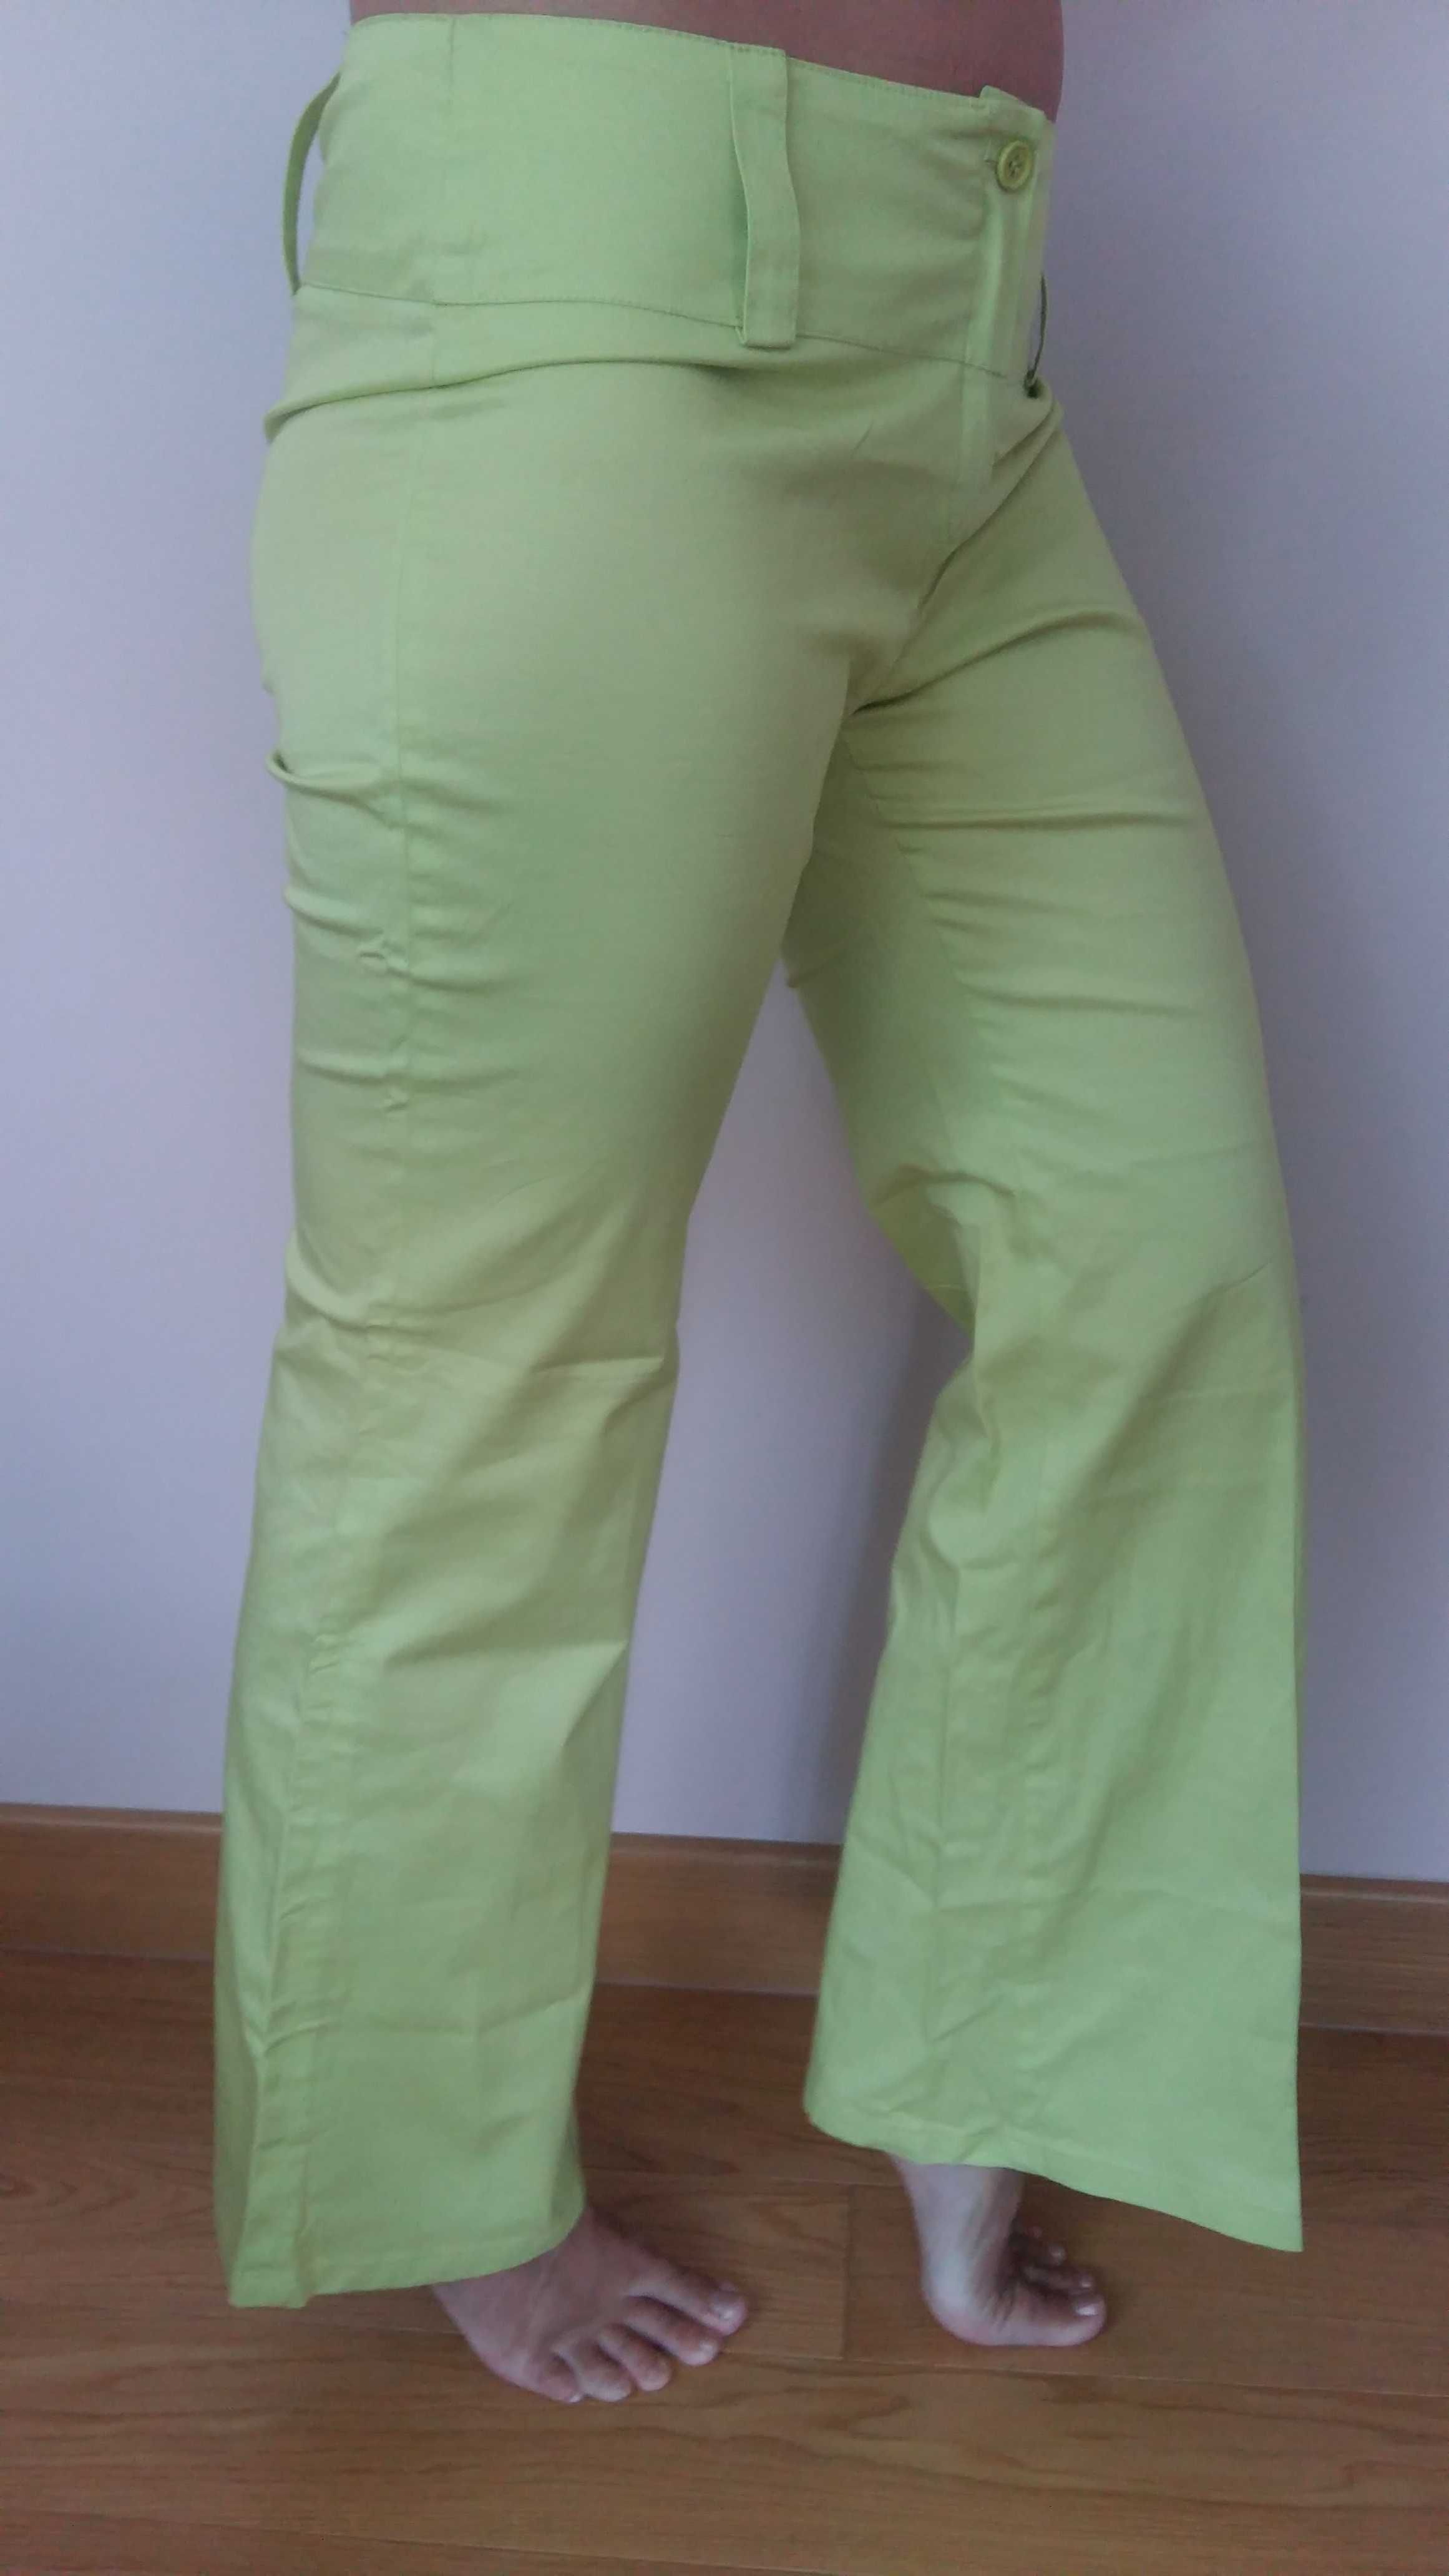 Spodnie rozm.M/L Terranowa szeroka nogawka bawełna zieleń wiosna/lato